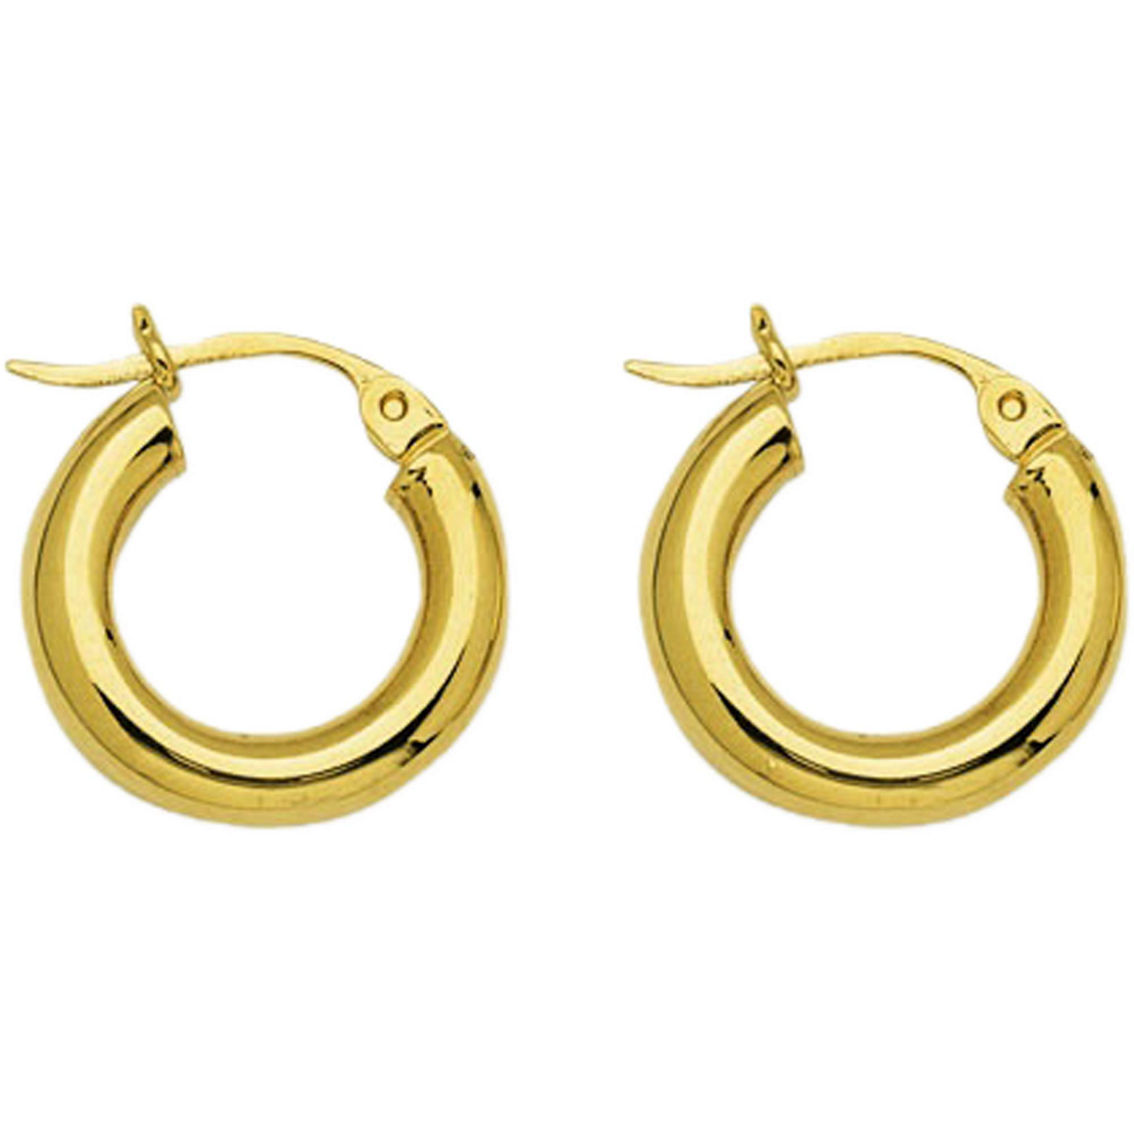 10k Yellow Gold Polished Hoop Earrings | Gold Earrings | Jewelry ...